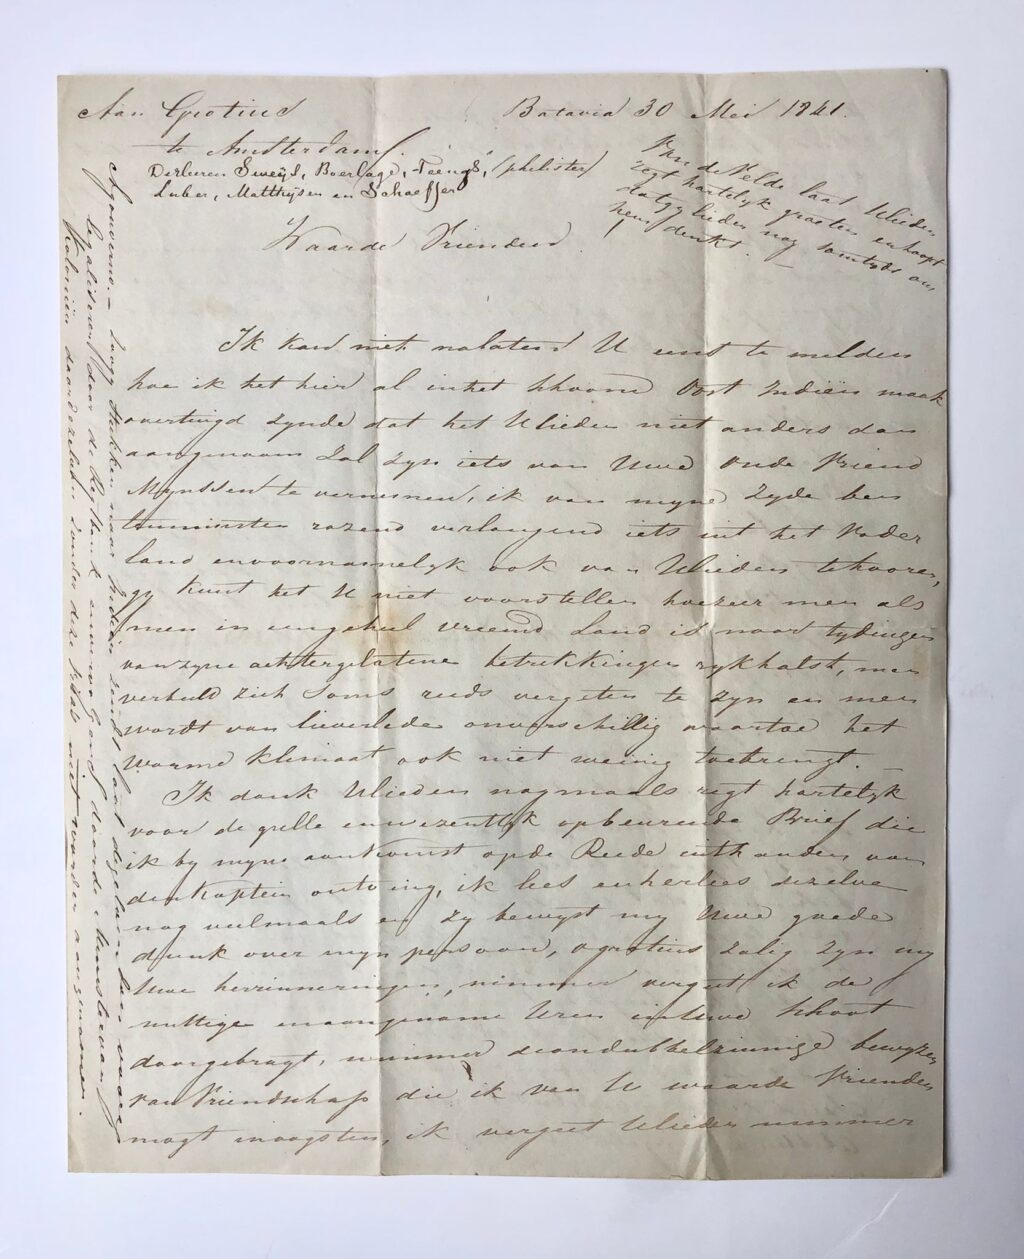 [Manuscript, letter, Indonesia, Indie, Jakarta, 1841] Twee zeer uitvoerige brieven van J.J. Mijnssen aan W.D. Sweijs, 1841-1842, geschreven vanuit Batavia, manuscripten, 9 pag.